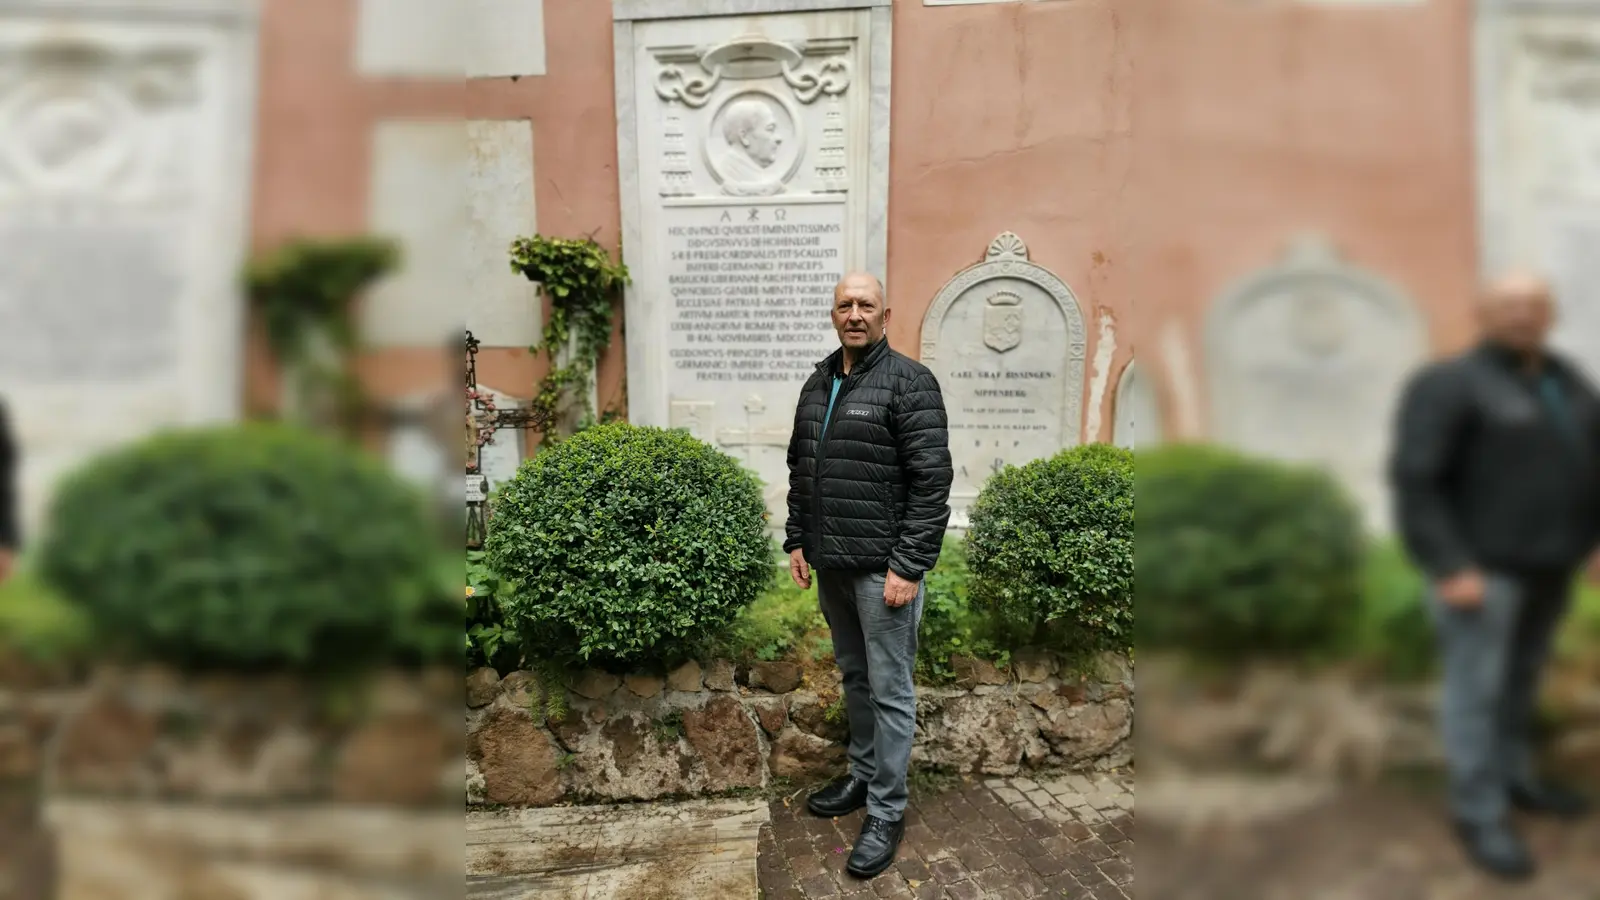 Bürgermeister Michael Trzybinski suchte während seines Aufenthaltes im Vatikan auch den dortigen Deutschen Friedhof auf. Das Foto zeigt ihn vor dem Grabmal, das Gustav Adolf zu Hohenlohe-Schillingsfürst gewidmet ist, der als Kurienkardinal in Rom gewirkt hatte. (Foto: Ingrid Trzybinski)